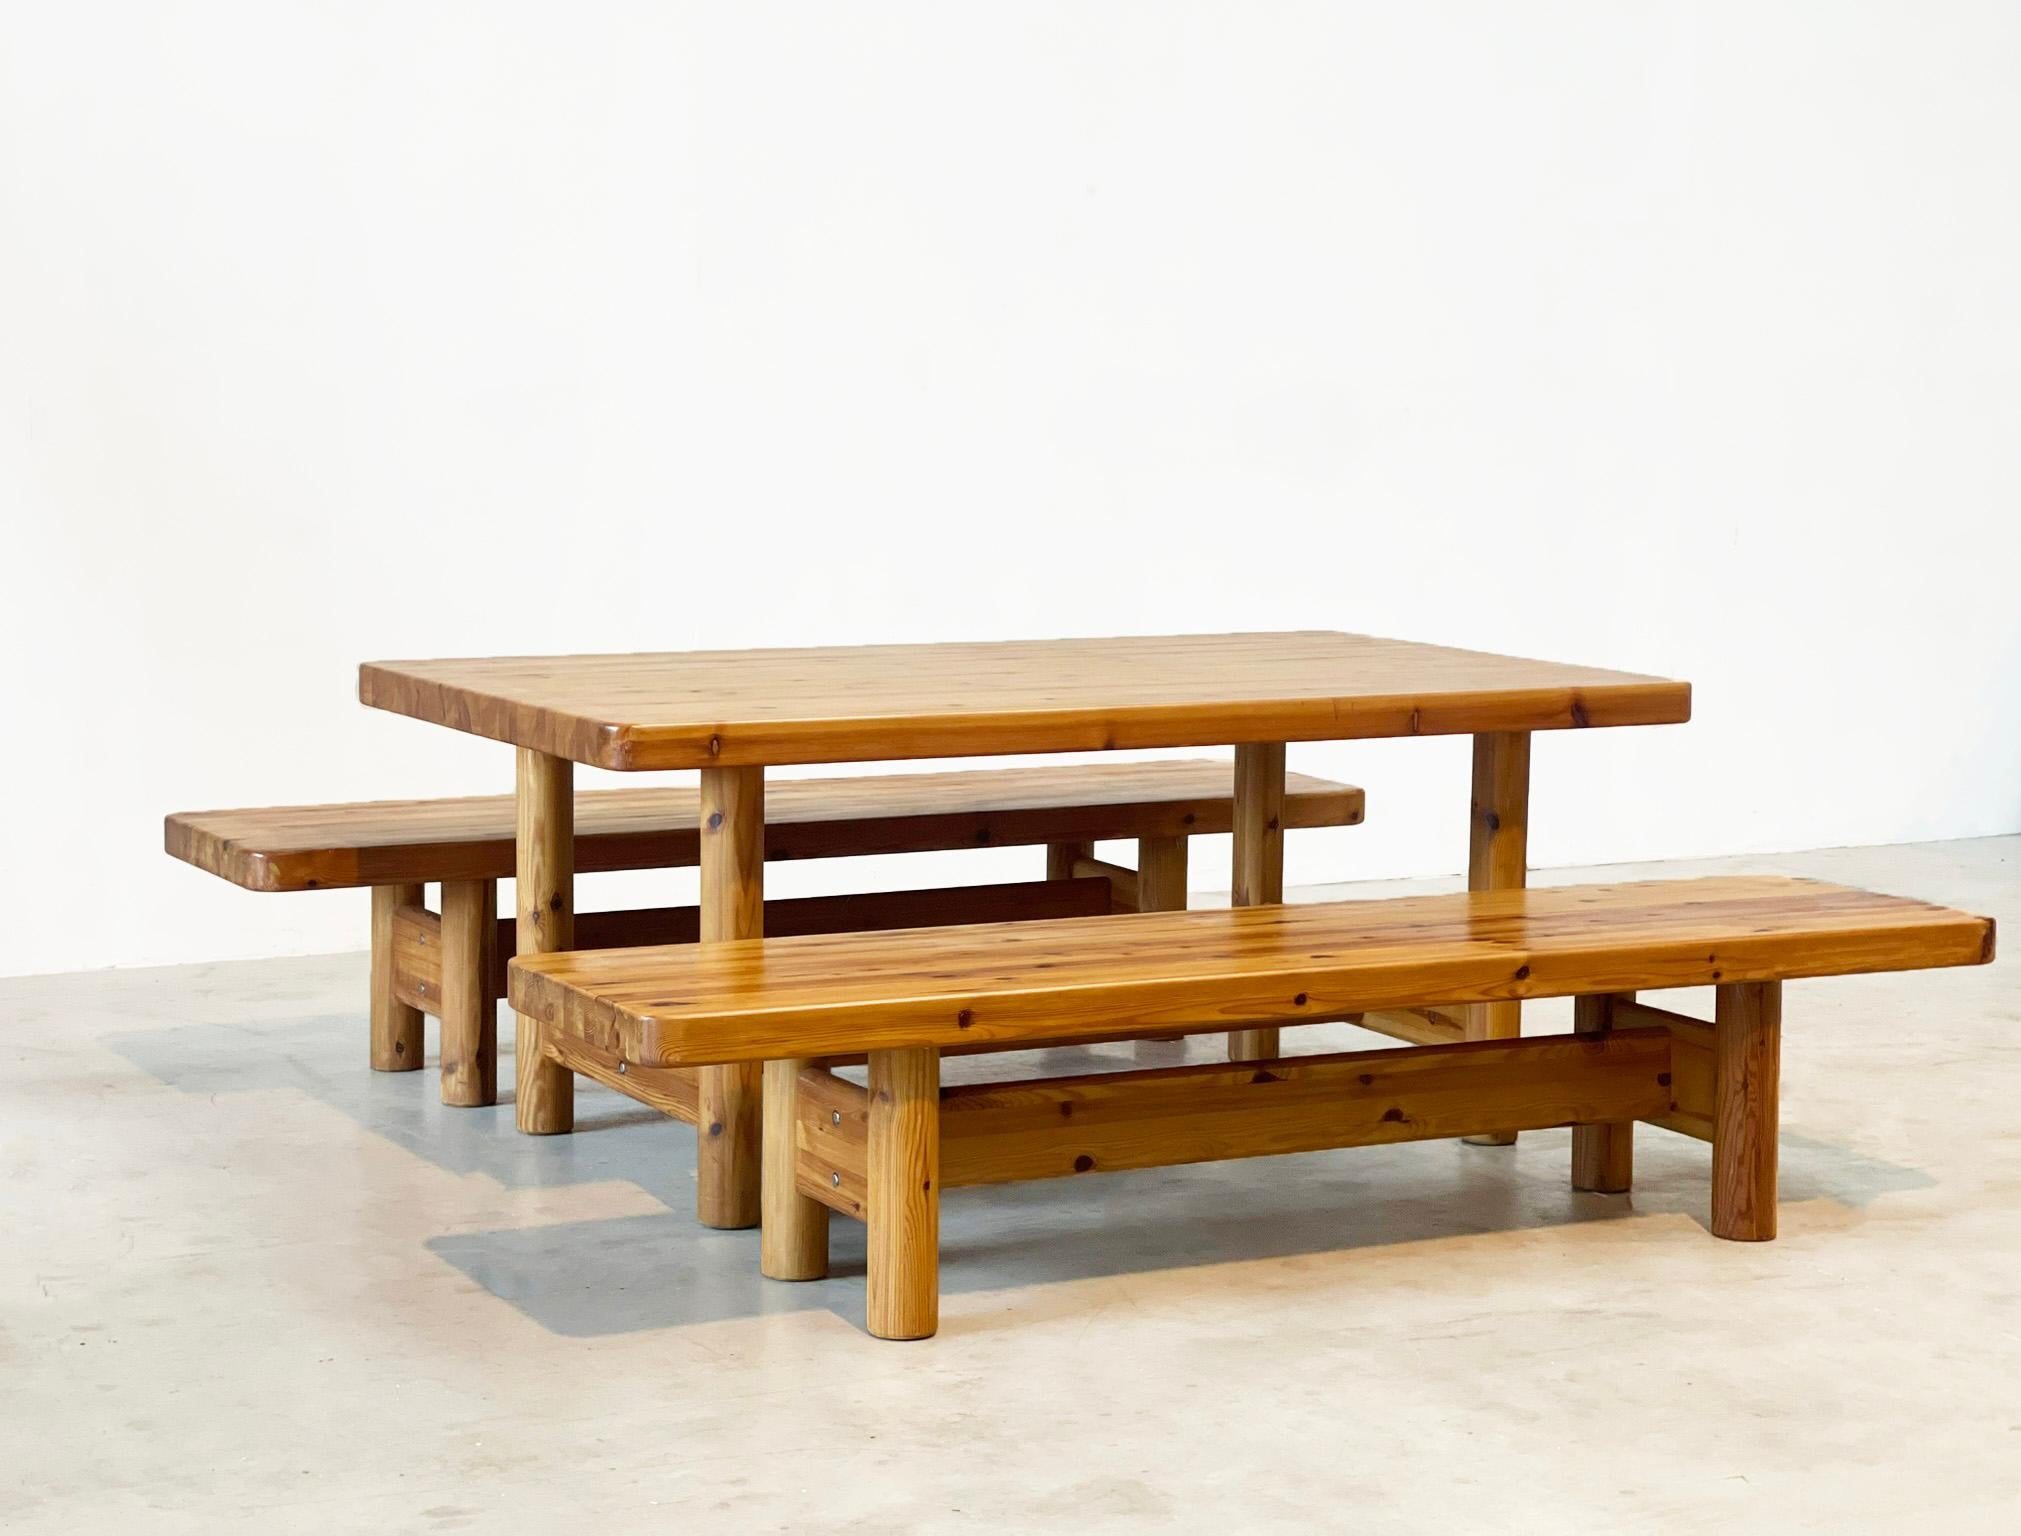 Très belle paire de canapés avec table par les célèbres designers danois Knu Friis et Elmar Moltke Nielsen. Ils ont conçu cet ensemble dans les années 1960 pour leur propre Studio et le fabricant Friis & Moltke Denmark. 
Ils sont surtout connus pour